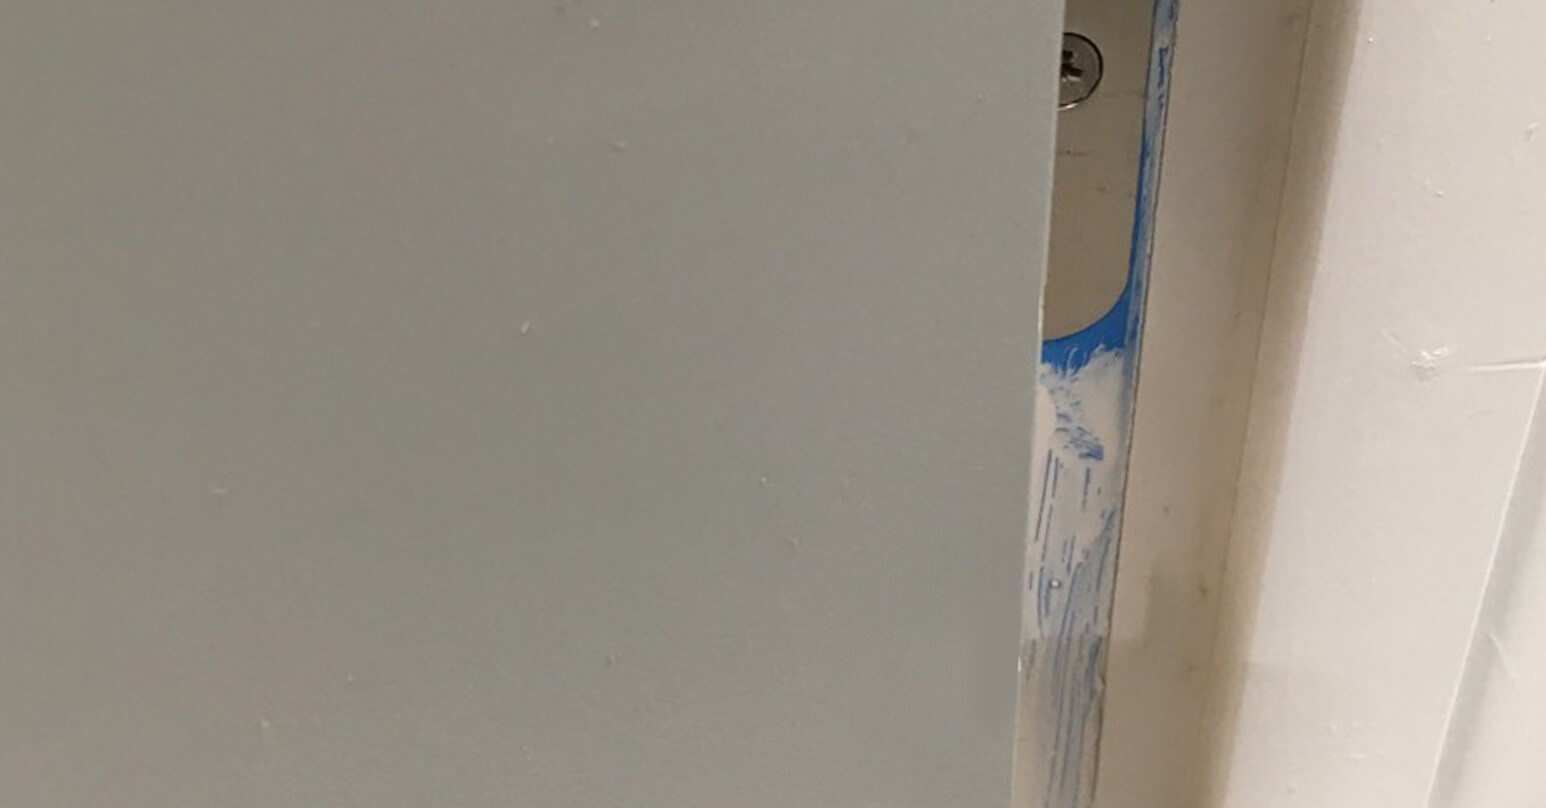 Large dent in laminate grey door - After repair